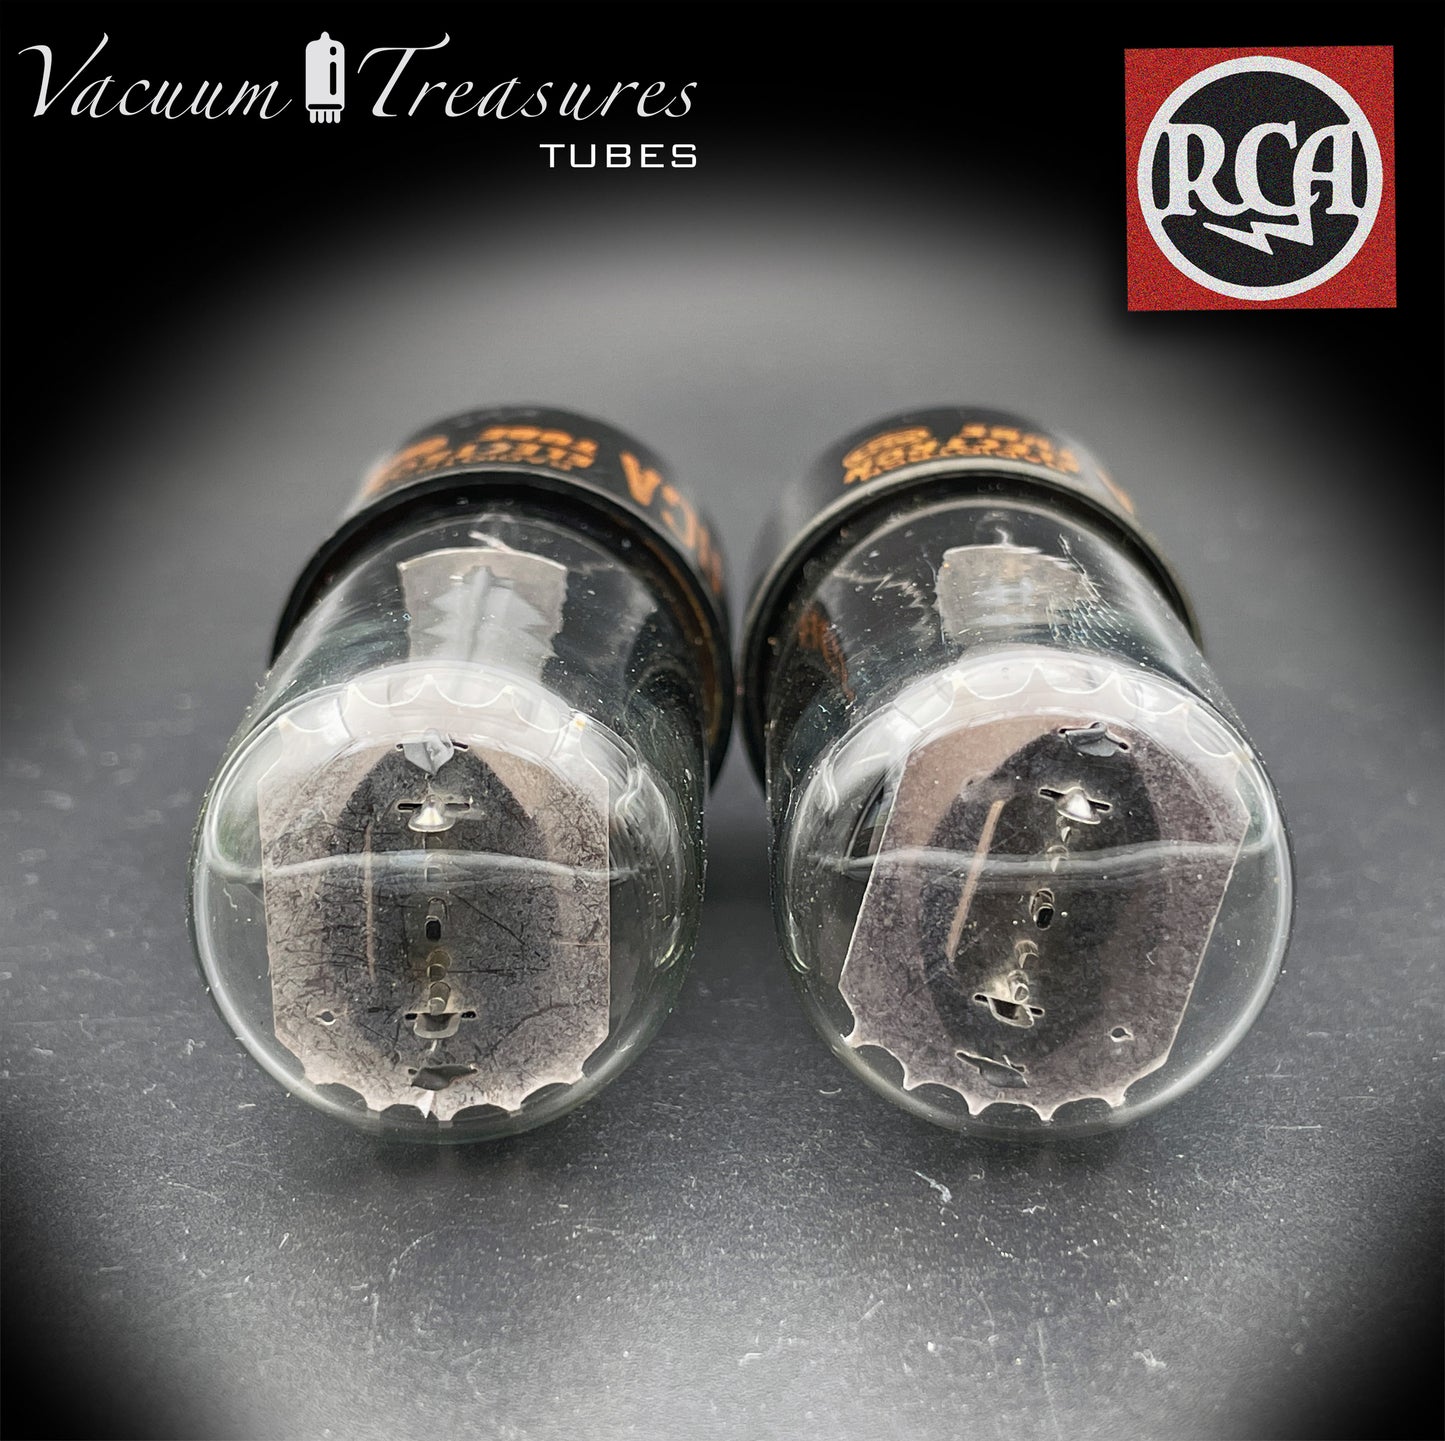 Plaques grises 6V6 GTA RCA inférieures doubles [] Getter AMPLITREX tubes assortis fabriqués aux États-Unis